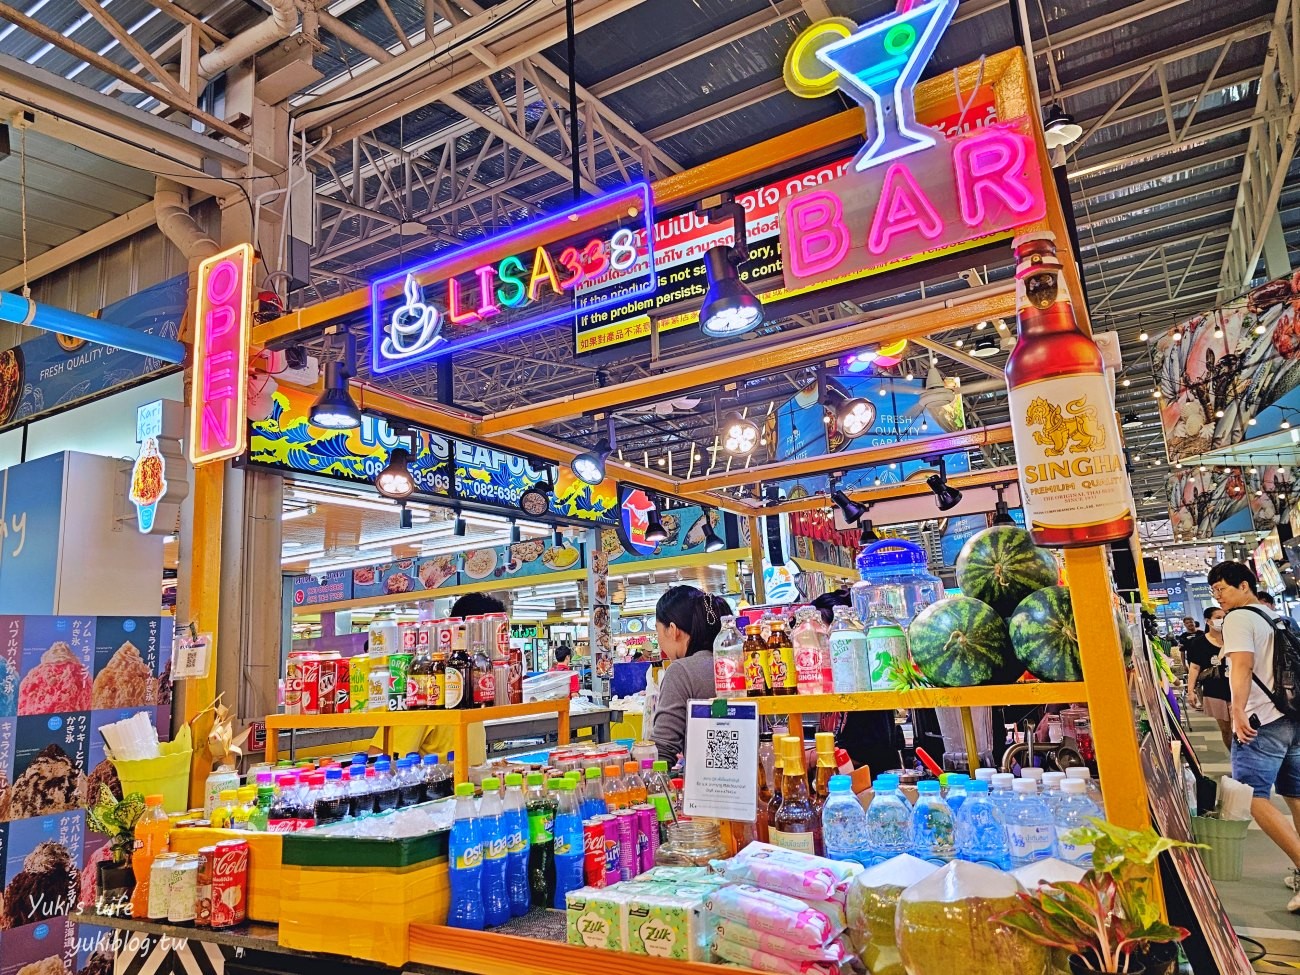 【曼谷自由行】曼谷必去6個水上市場、海鮮市場推薦懶人包(交通&營業資訊) - yukiblog.tw